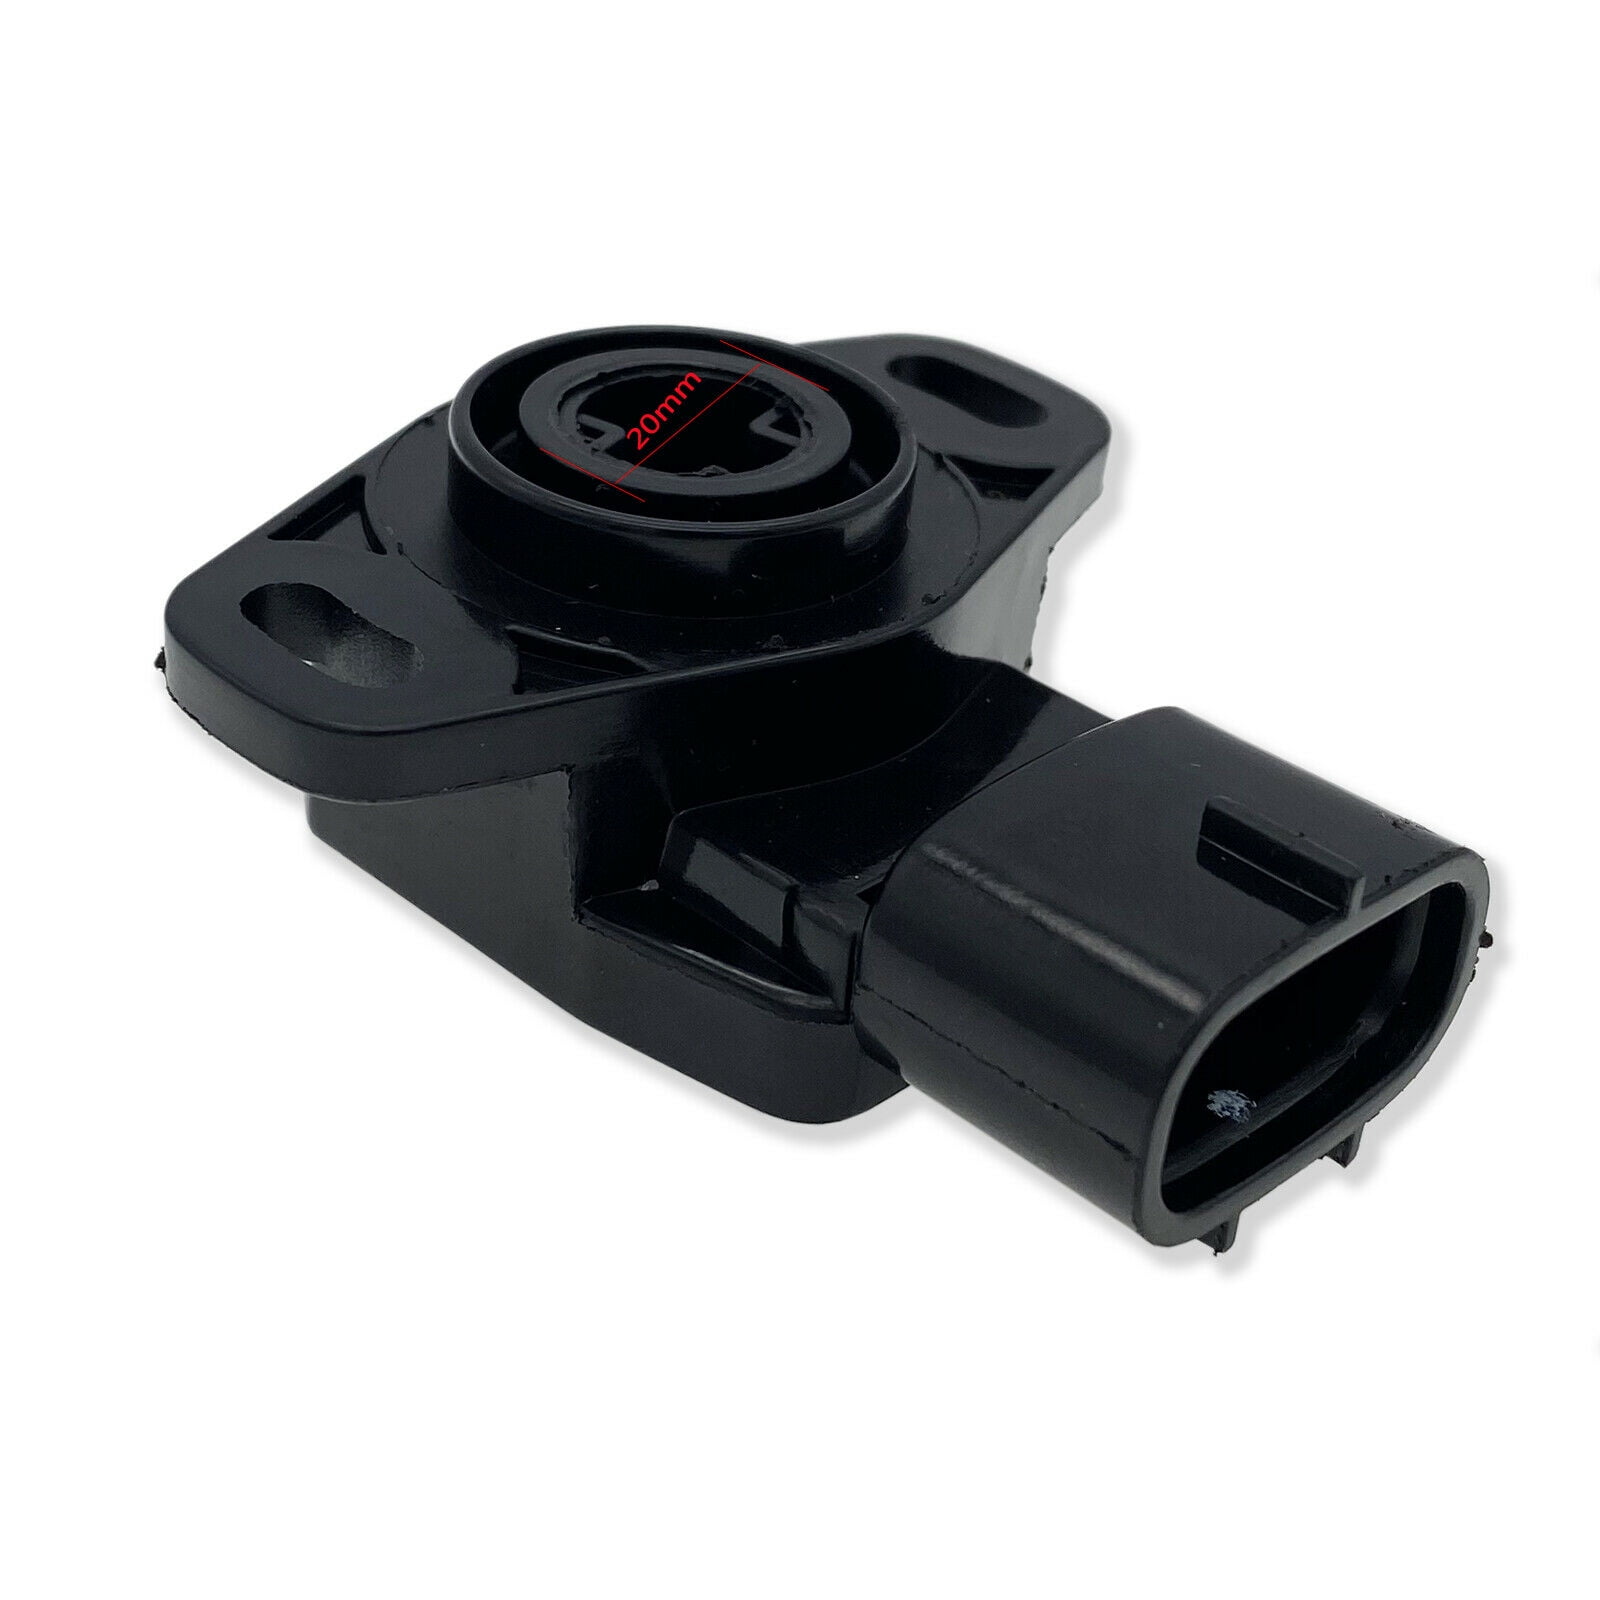 TPS Throttle Position Sensor For Polaris Sportsman 550 2010-13 RZR 800 2011-14 